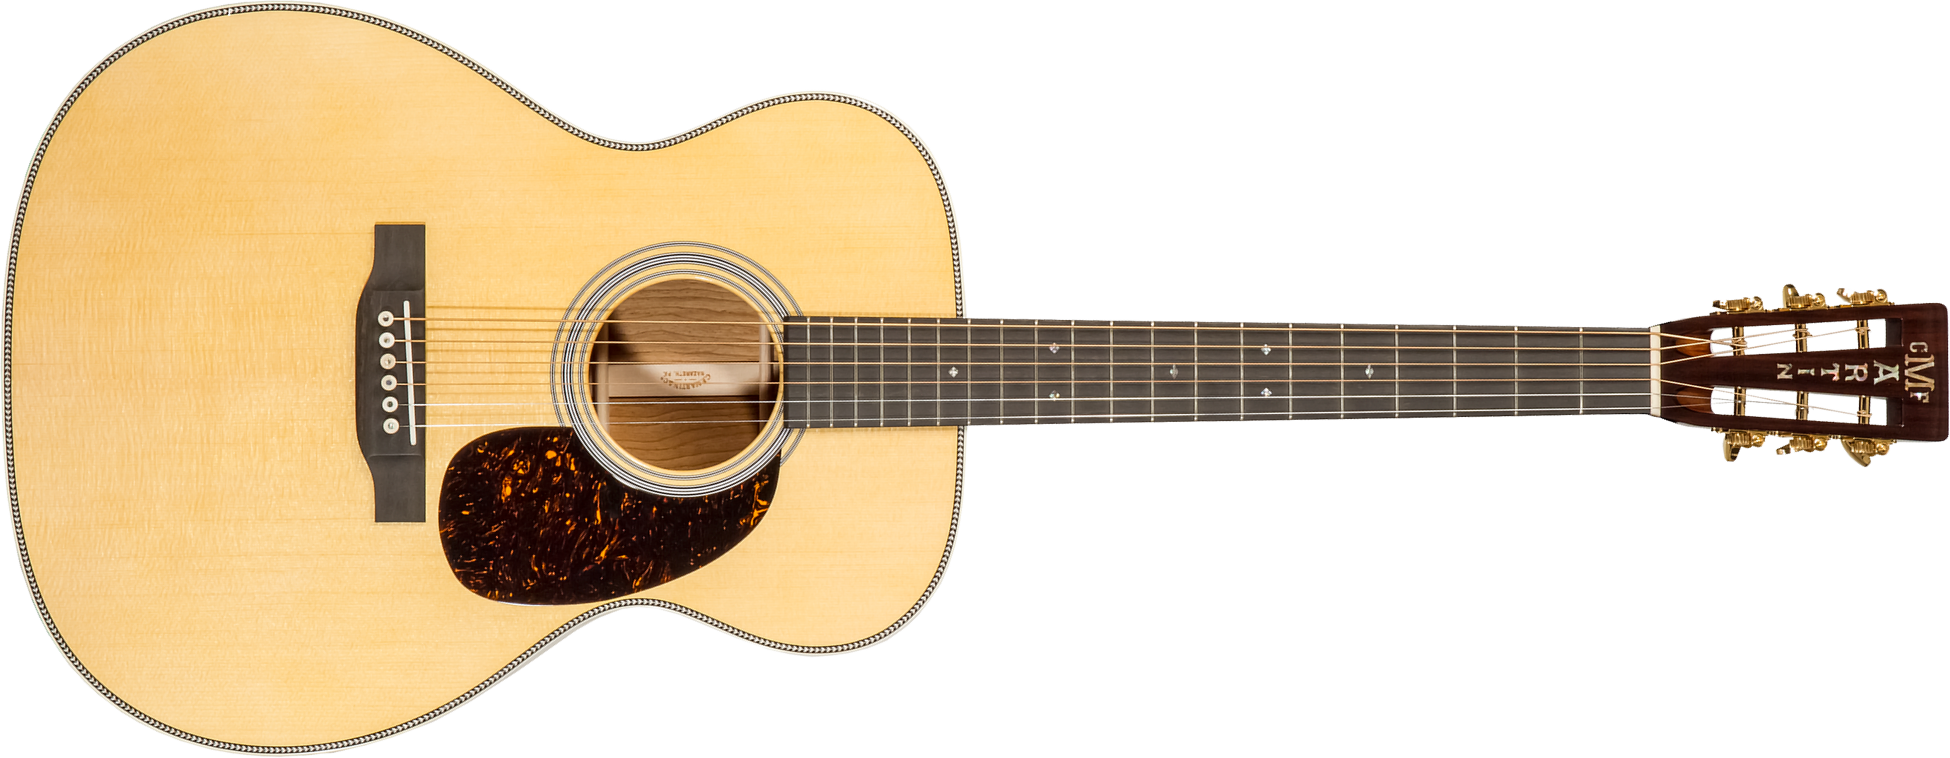 Martin Custom Shop Cs-000-c22034239 000 Epicea Palissandre Eb #2736825 - Natural Aging Toner - Guitare Acoustique - Main picture